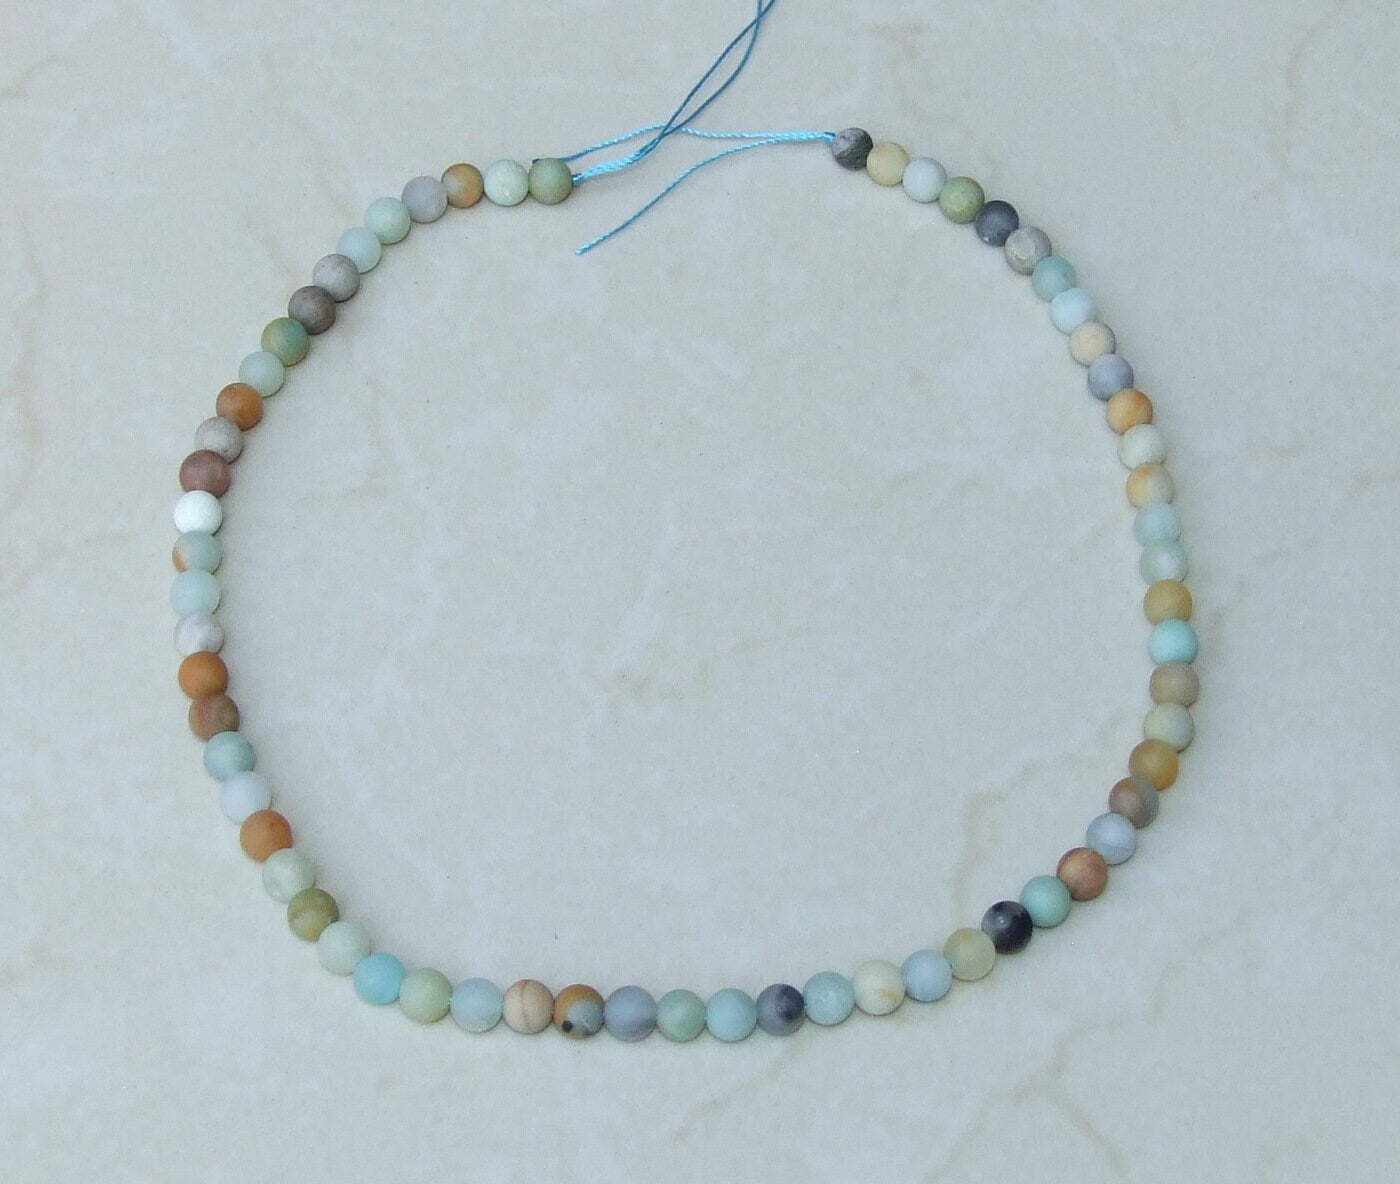 Amazonite Round Matte Beads - Amazonite Beads - Round Beads - Frosty Matte Finish - Full Strand - Gemstone Beads - Jewelry Stones - 6mm